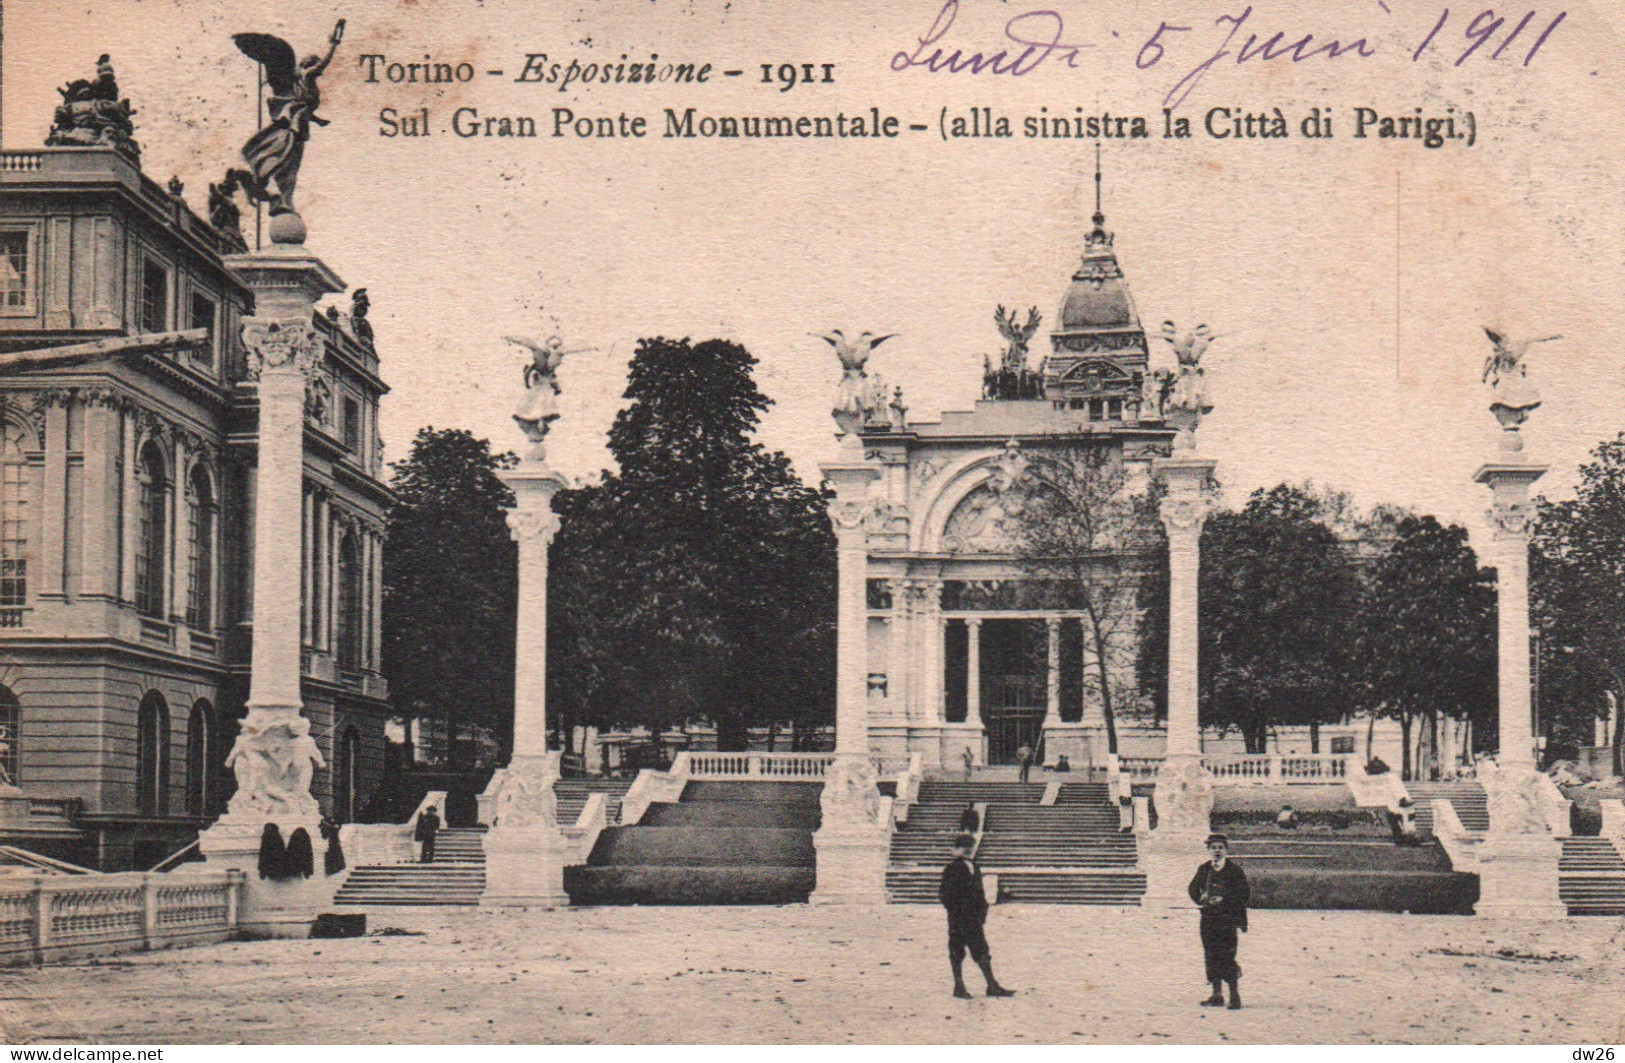 Torino (Turin) Esposizione 1911 - Sul Gran Ponte Monumentale (le Pont, Alla Sinistra La Città Di Parigi) - Tentoonstellingen